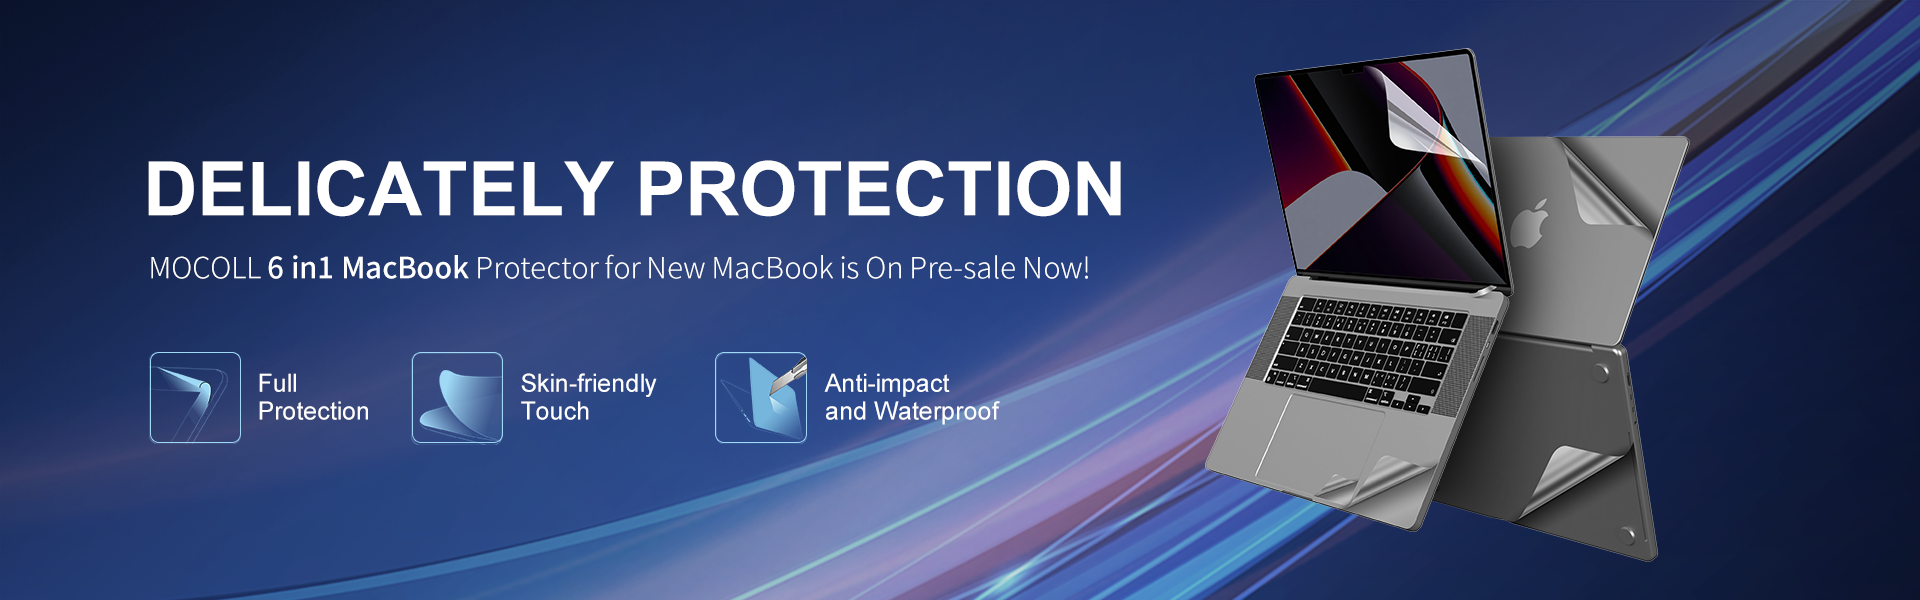 Noul protector 6 în 1 pentru Macbook este acum la vânzare!